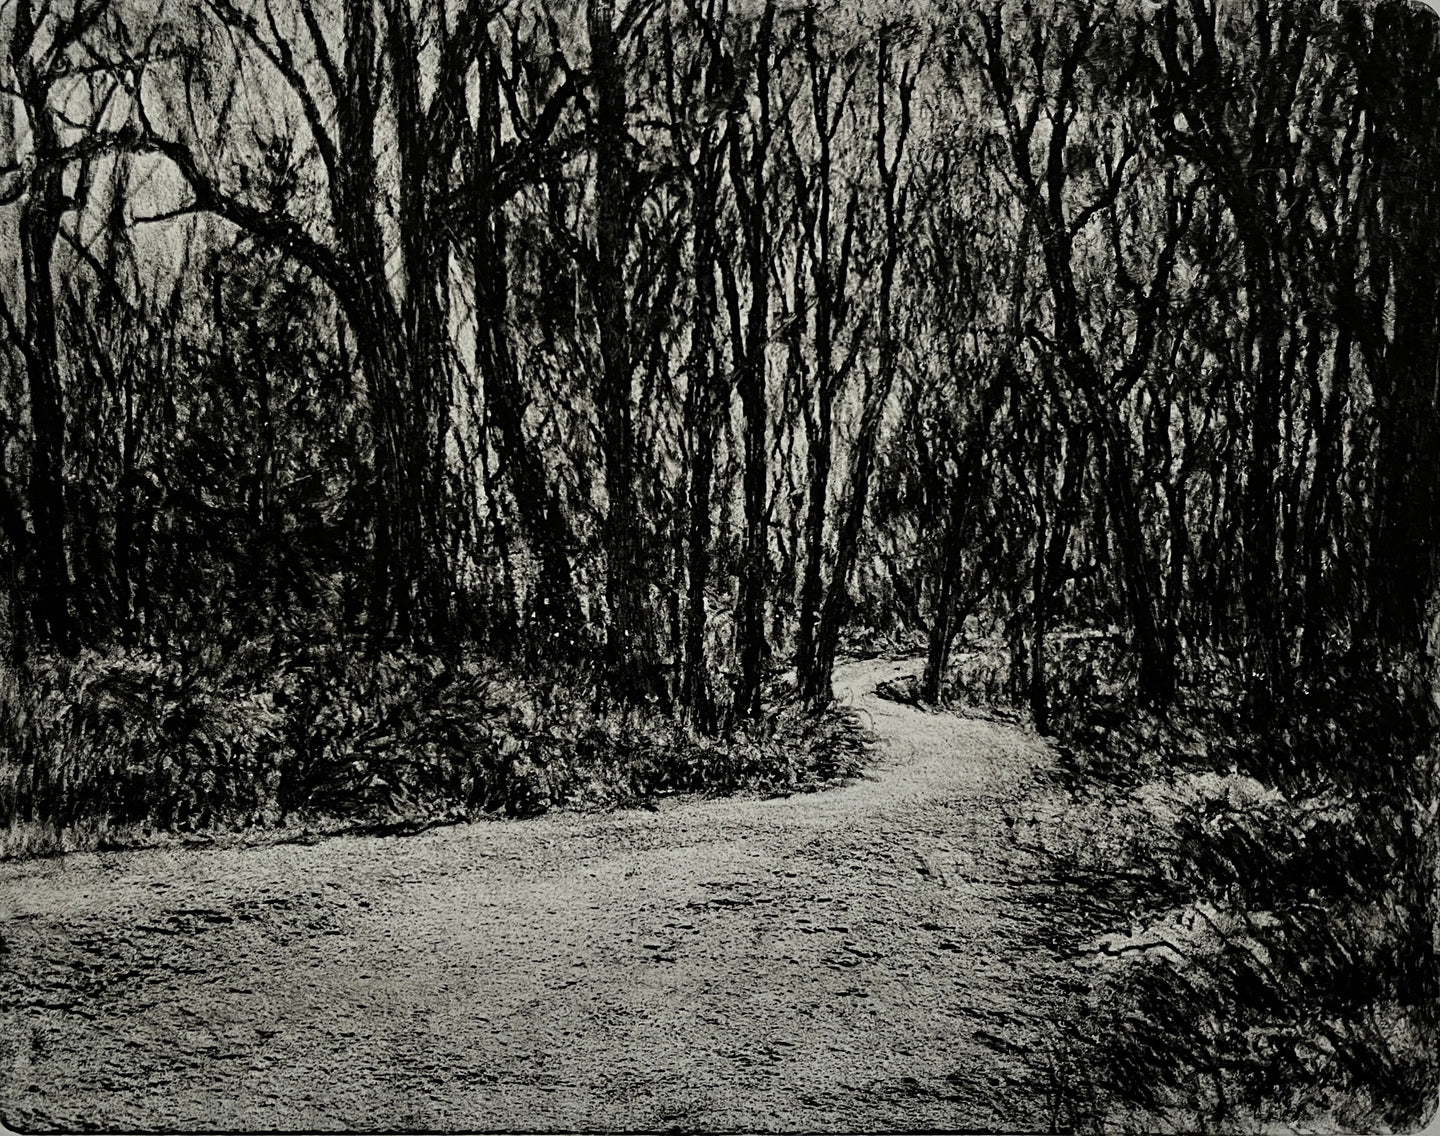 5. The Gravel Road Monotype (Framed)